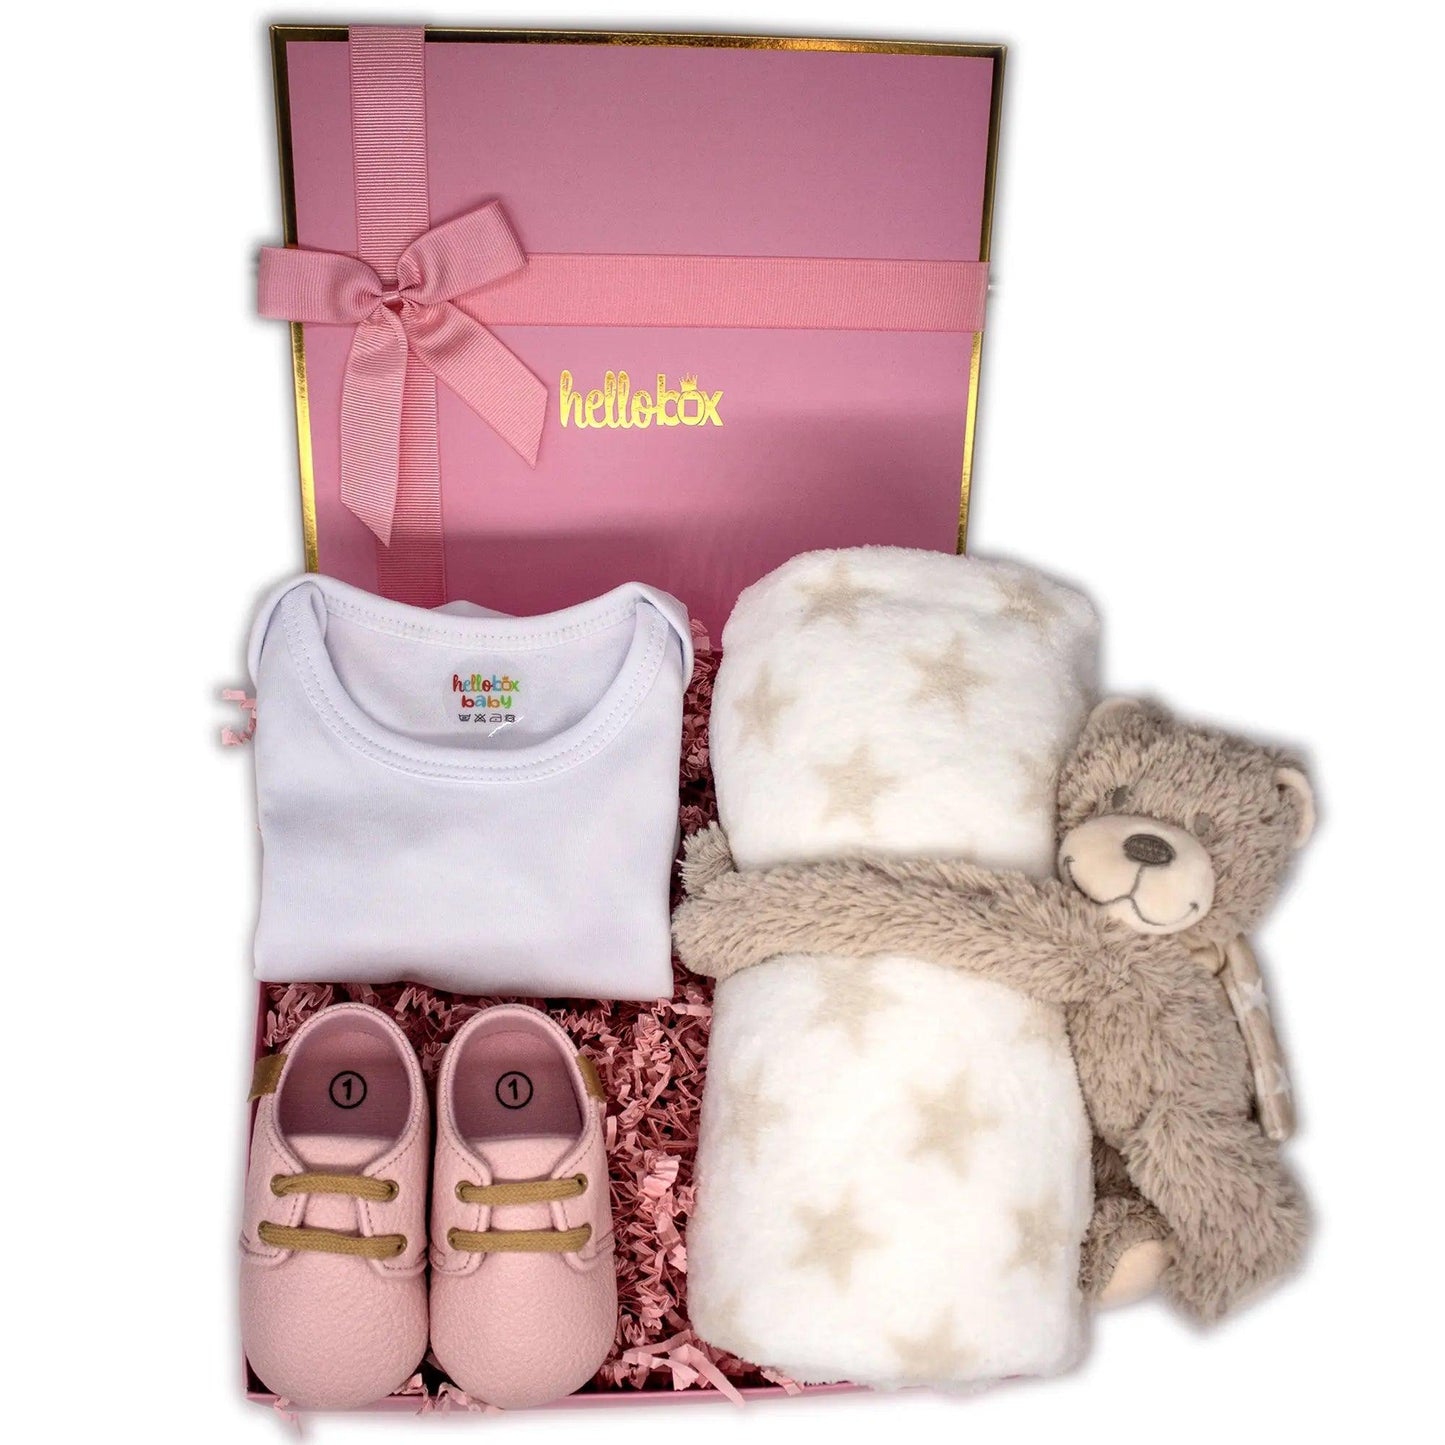 Hello box Baby Geschenkset zur Geburt für mädchen, Neugeborene geschenkset mit Lauflernschuhe, Babydecke, Kuscheltier Rosa Mädchen-0